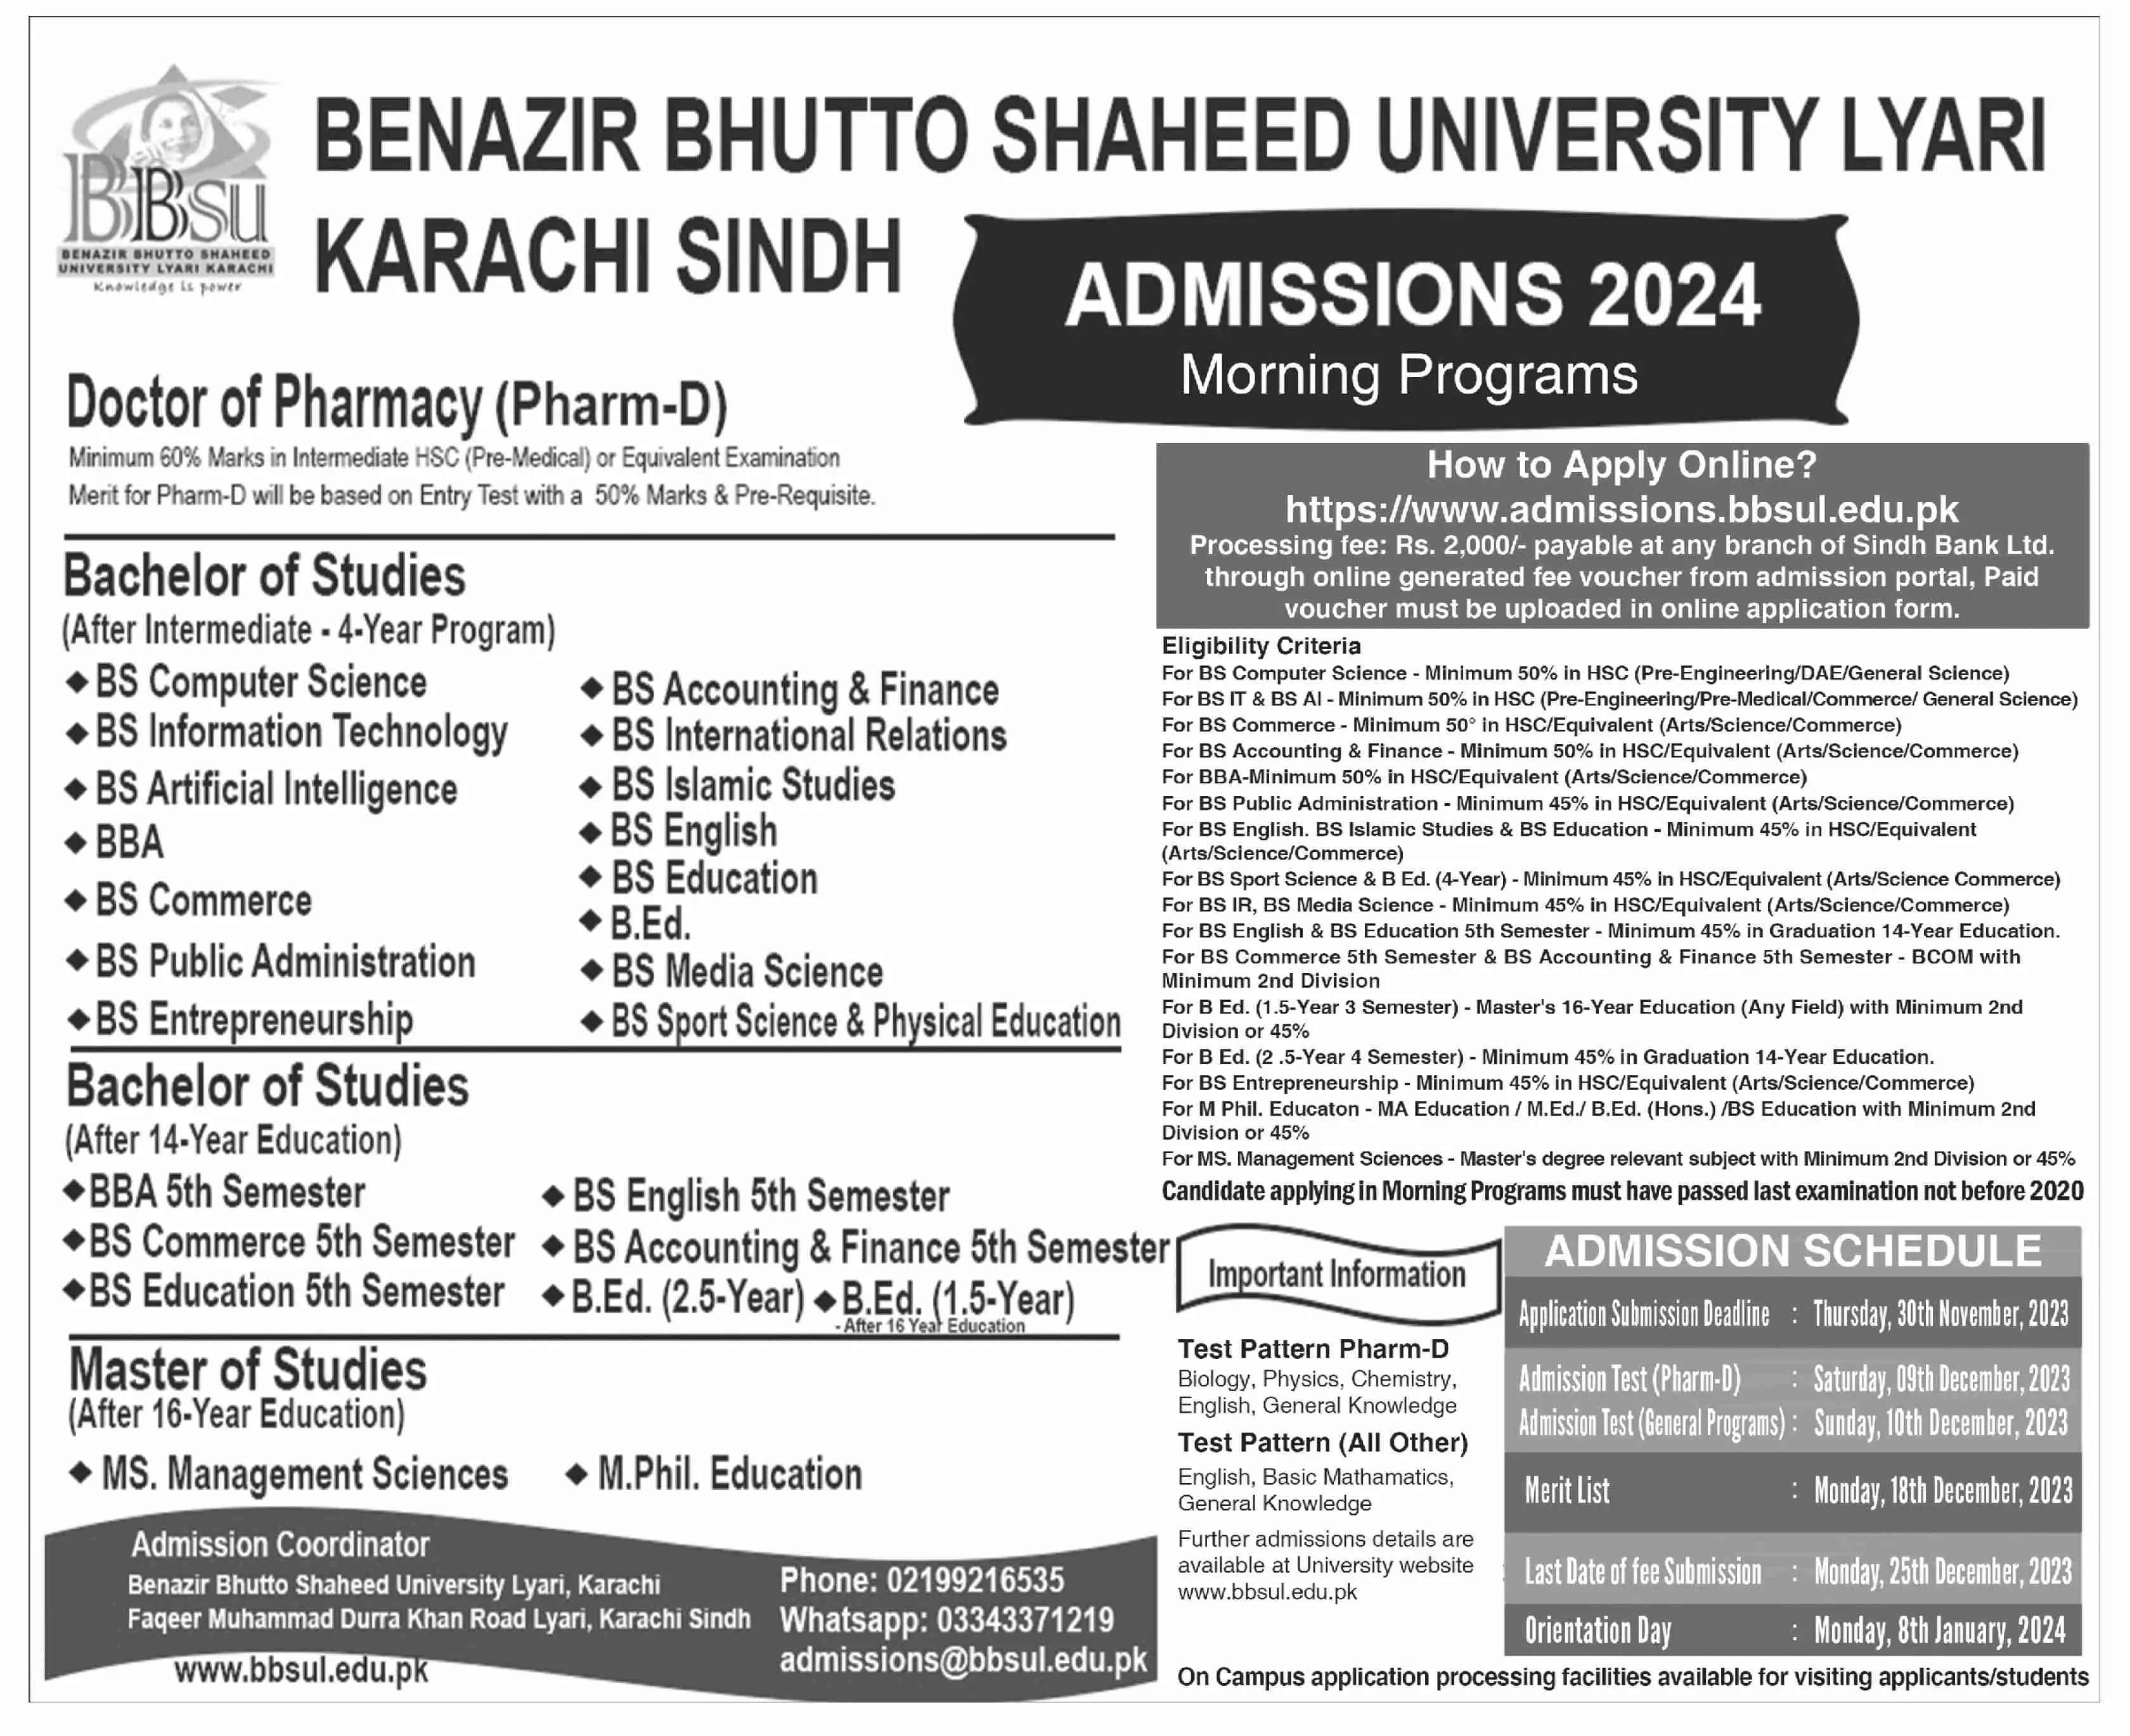 Benazir Bhutto Shaheed University Lyari Admissions 2024